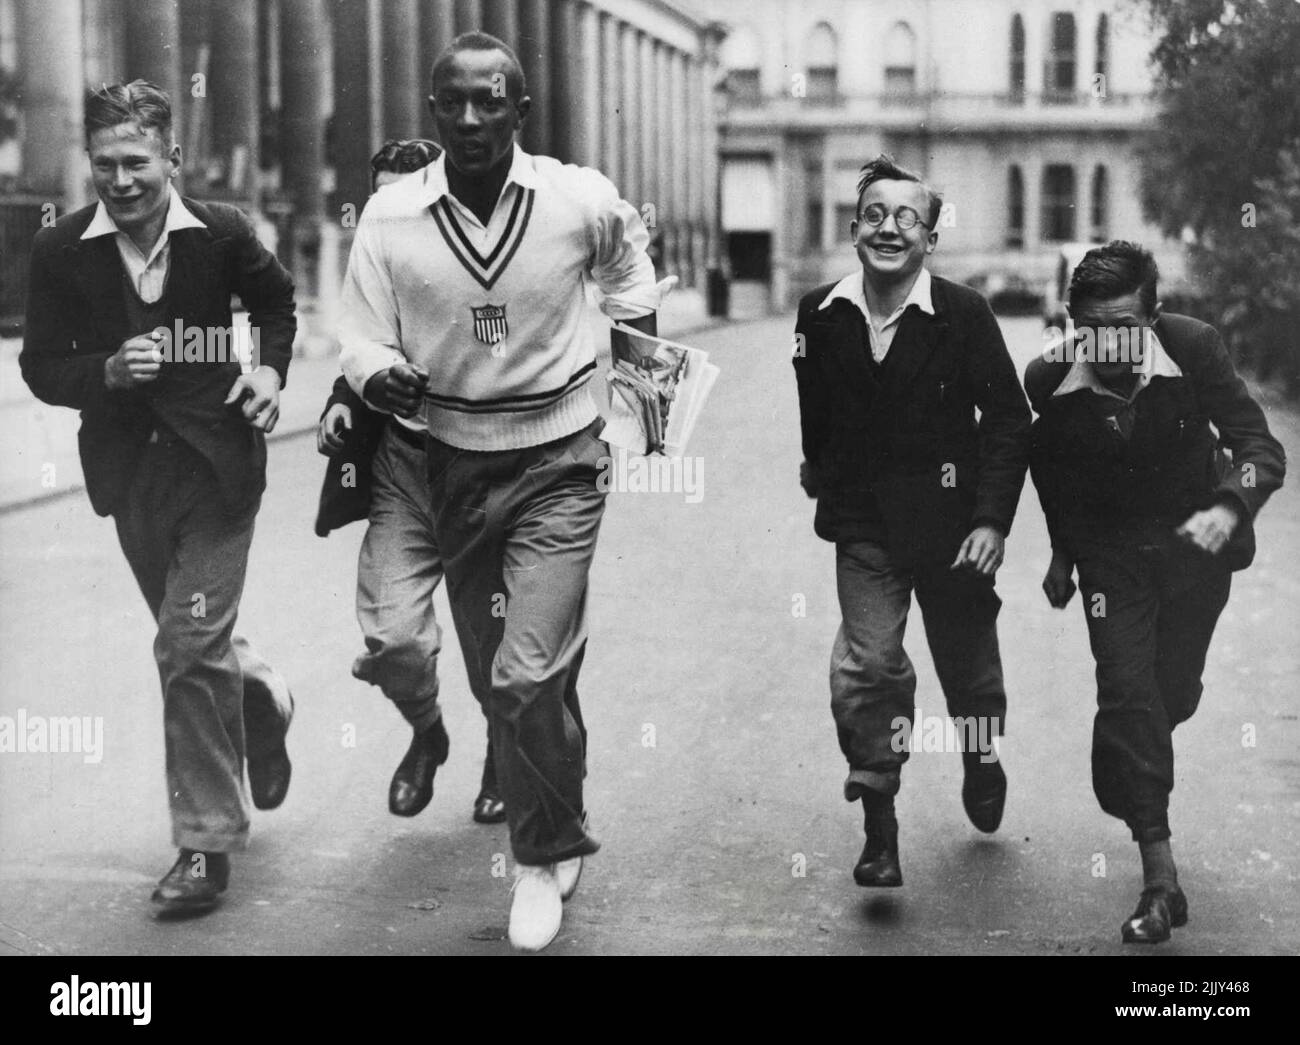 Les athlètes olympiques américains de Londres où ils participeront à un concours d'athlétisme contre une équipe anglaise au stade de White City, sur 15 août. Jesse Owens, le célèbre coureur américain, montre à quelques jeunes messagers « comment faire ». 14 août 1936. (Photo de Sport & General Press Agency, Limited). Banque D'Images